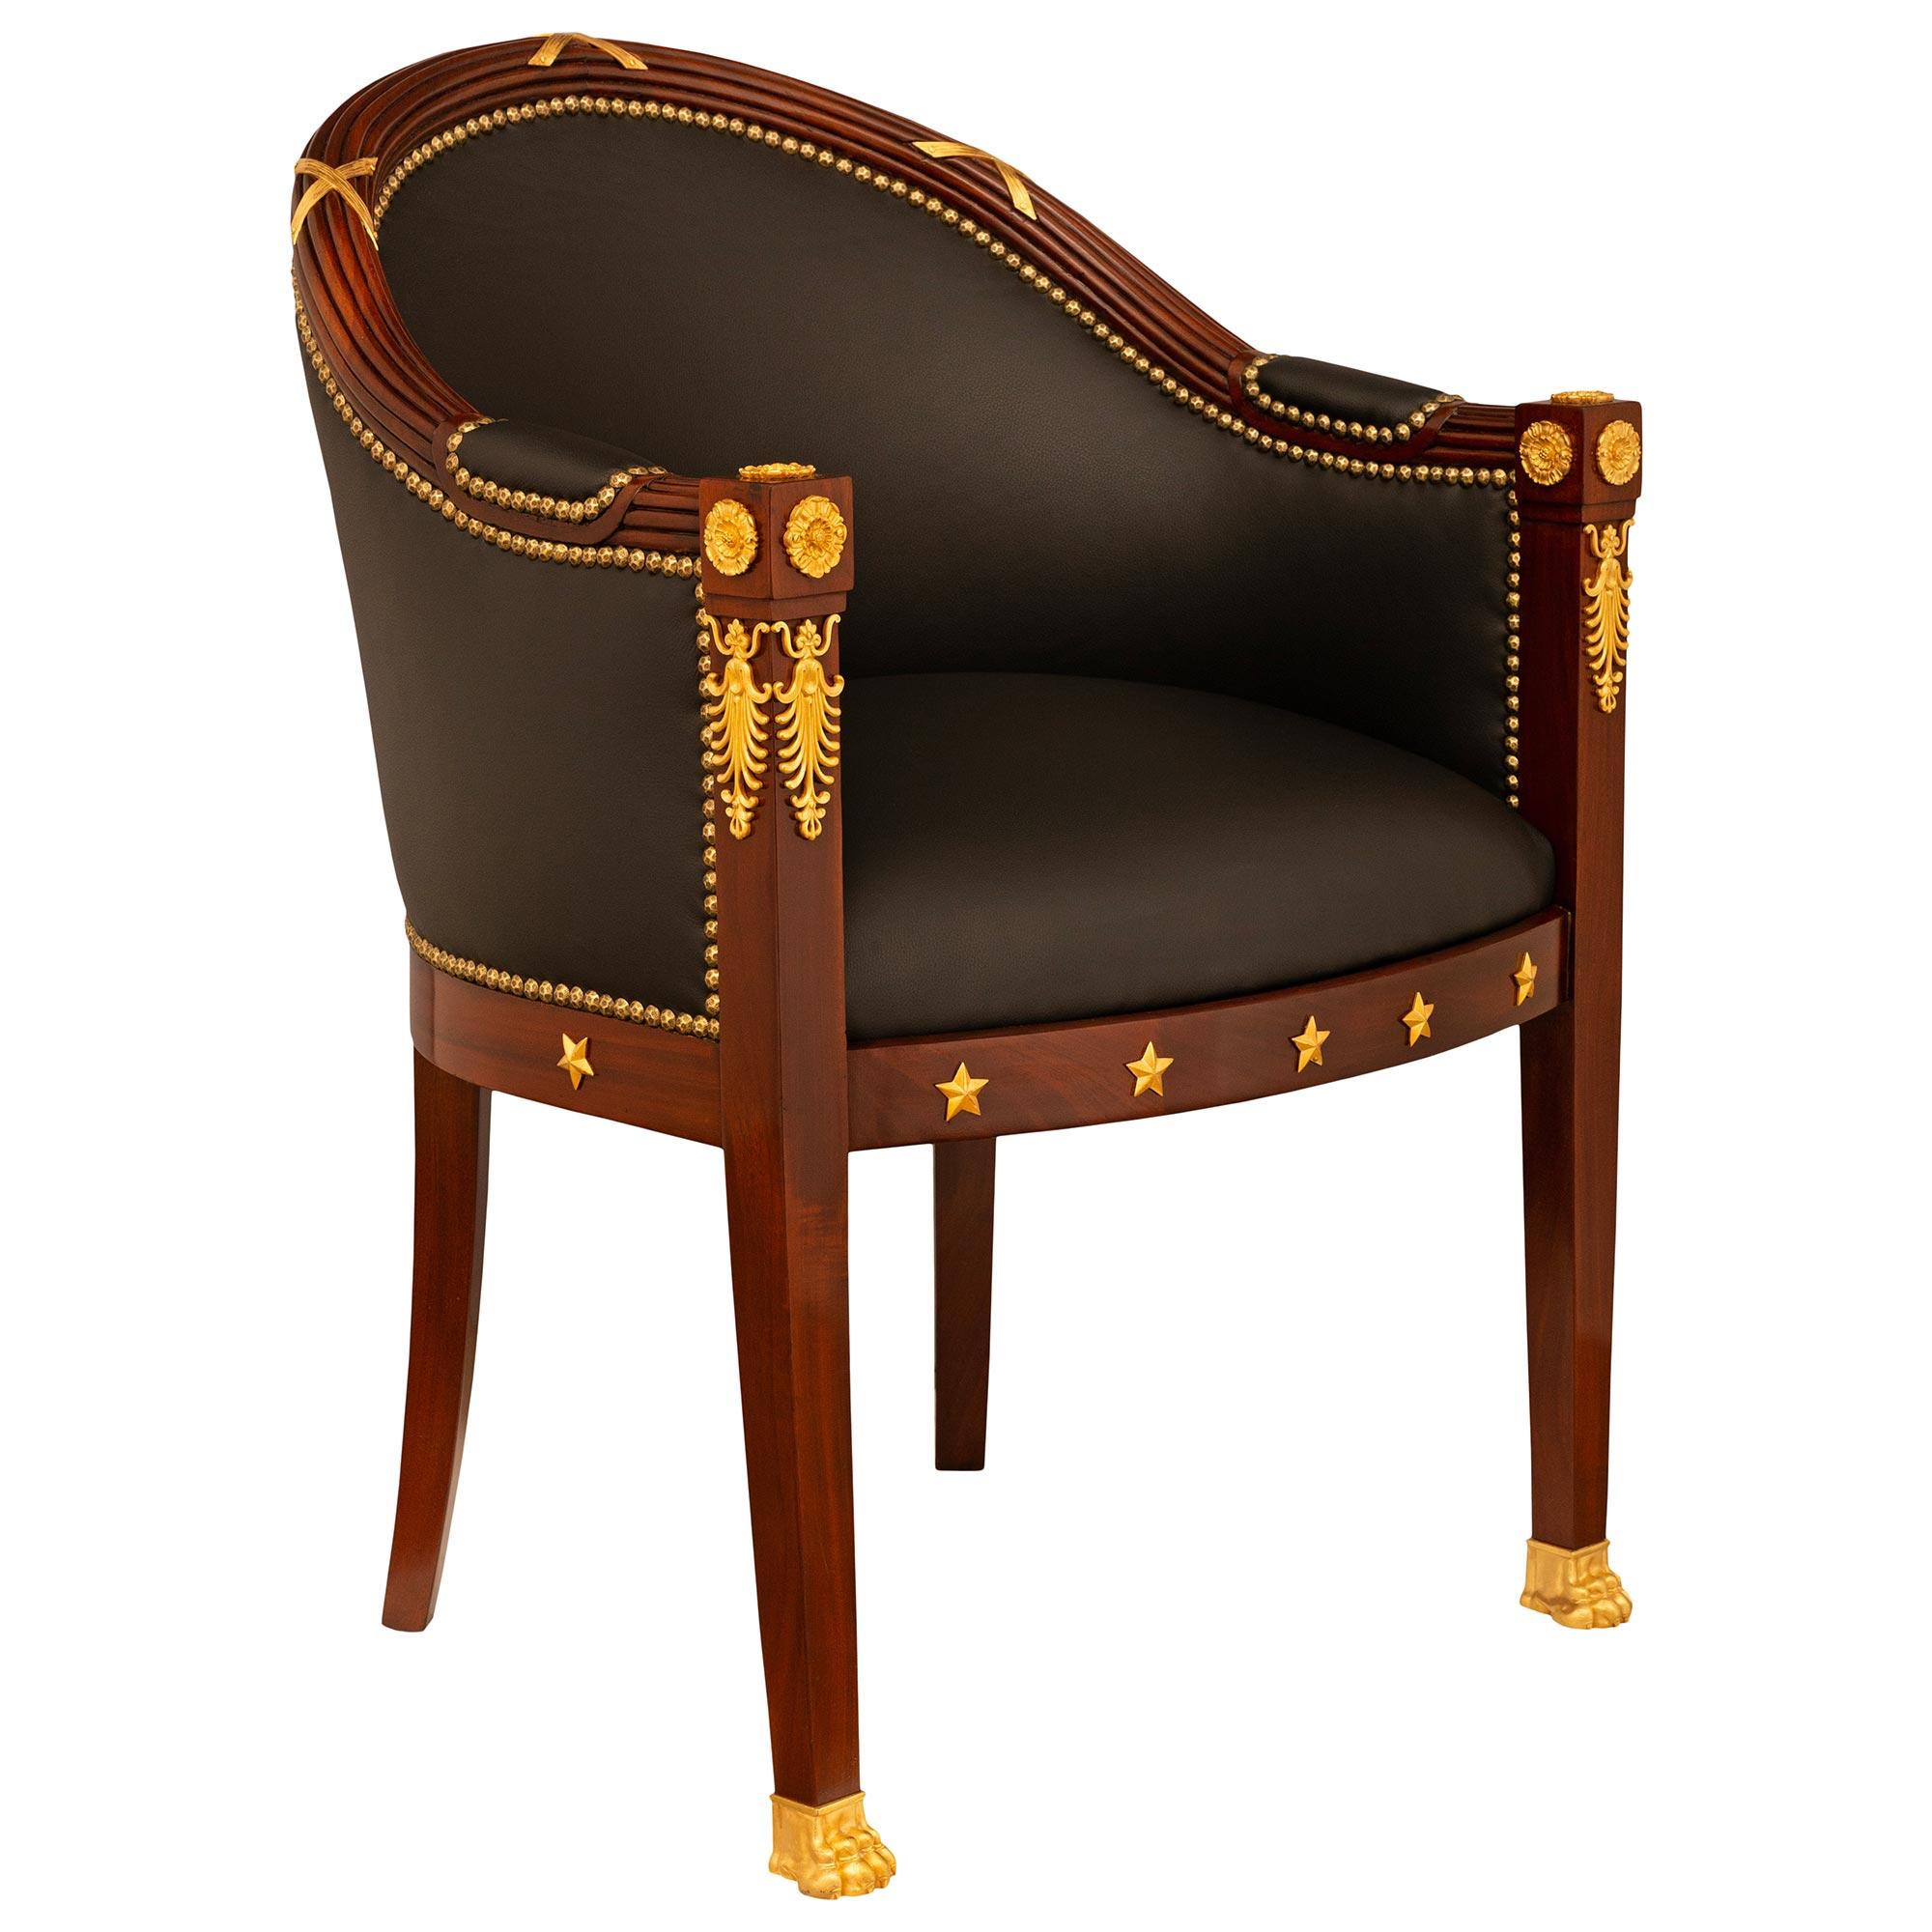 Une belle paire de fauteuils Empire du 19ème siècle en acajou et bronze doré. Les fauteuils reposent sur quatre pieds carrés et légèrement incurvés, les pieds avant étant ornés de pattes en bronze doré. Le tablier avant droit est orné de cinq